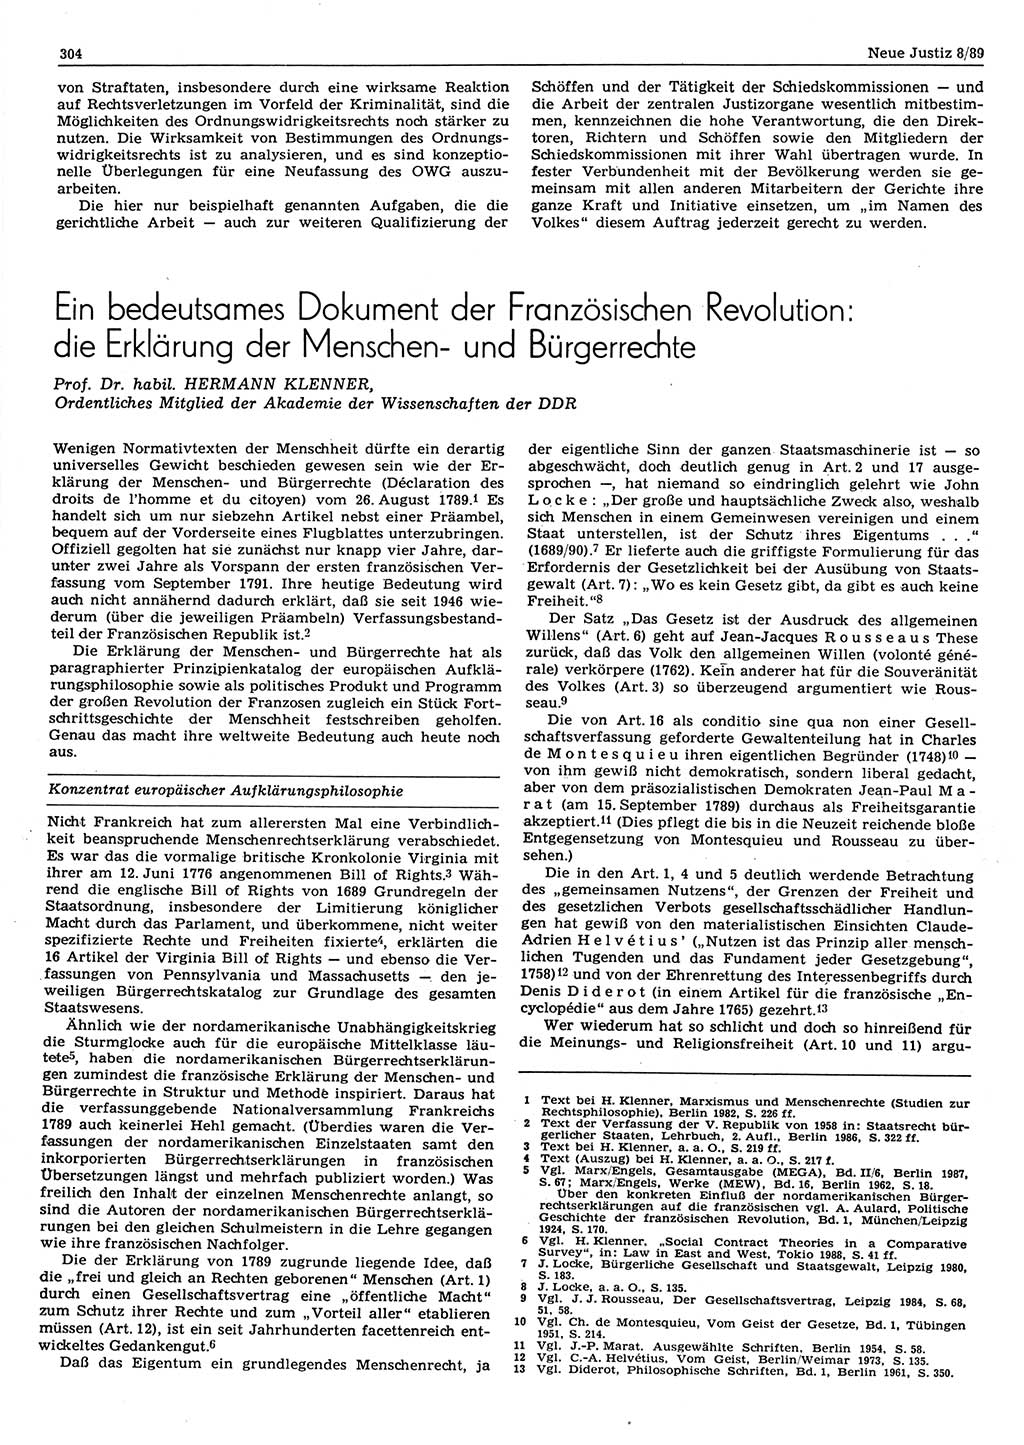 Neue Justiz (NJ), Zeitschrift für sozialistisches Recht und Gesetzlichkeit [Deutsche Demokratische Republik (DDR)], 43. Jahrgang 1989, Seite 304 (NJ DDR 1989, S. 304)